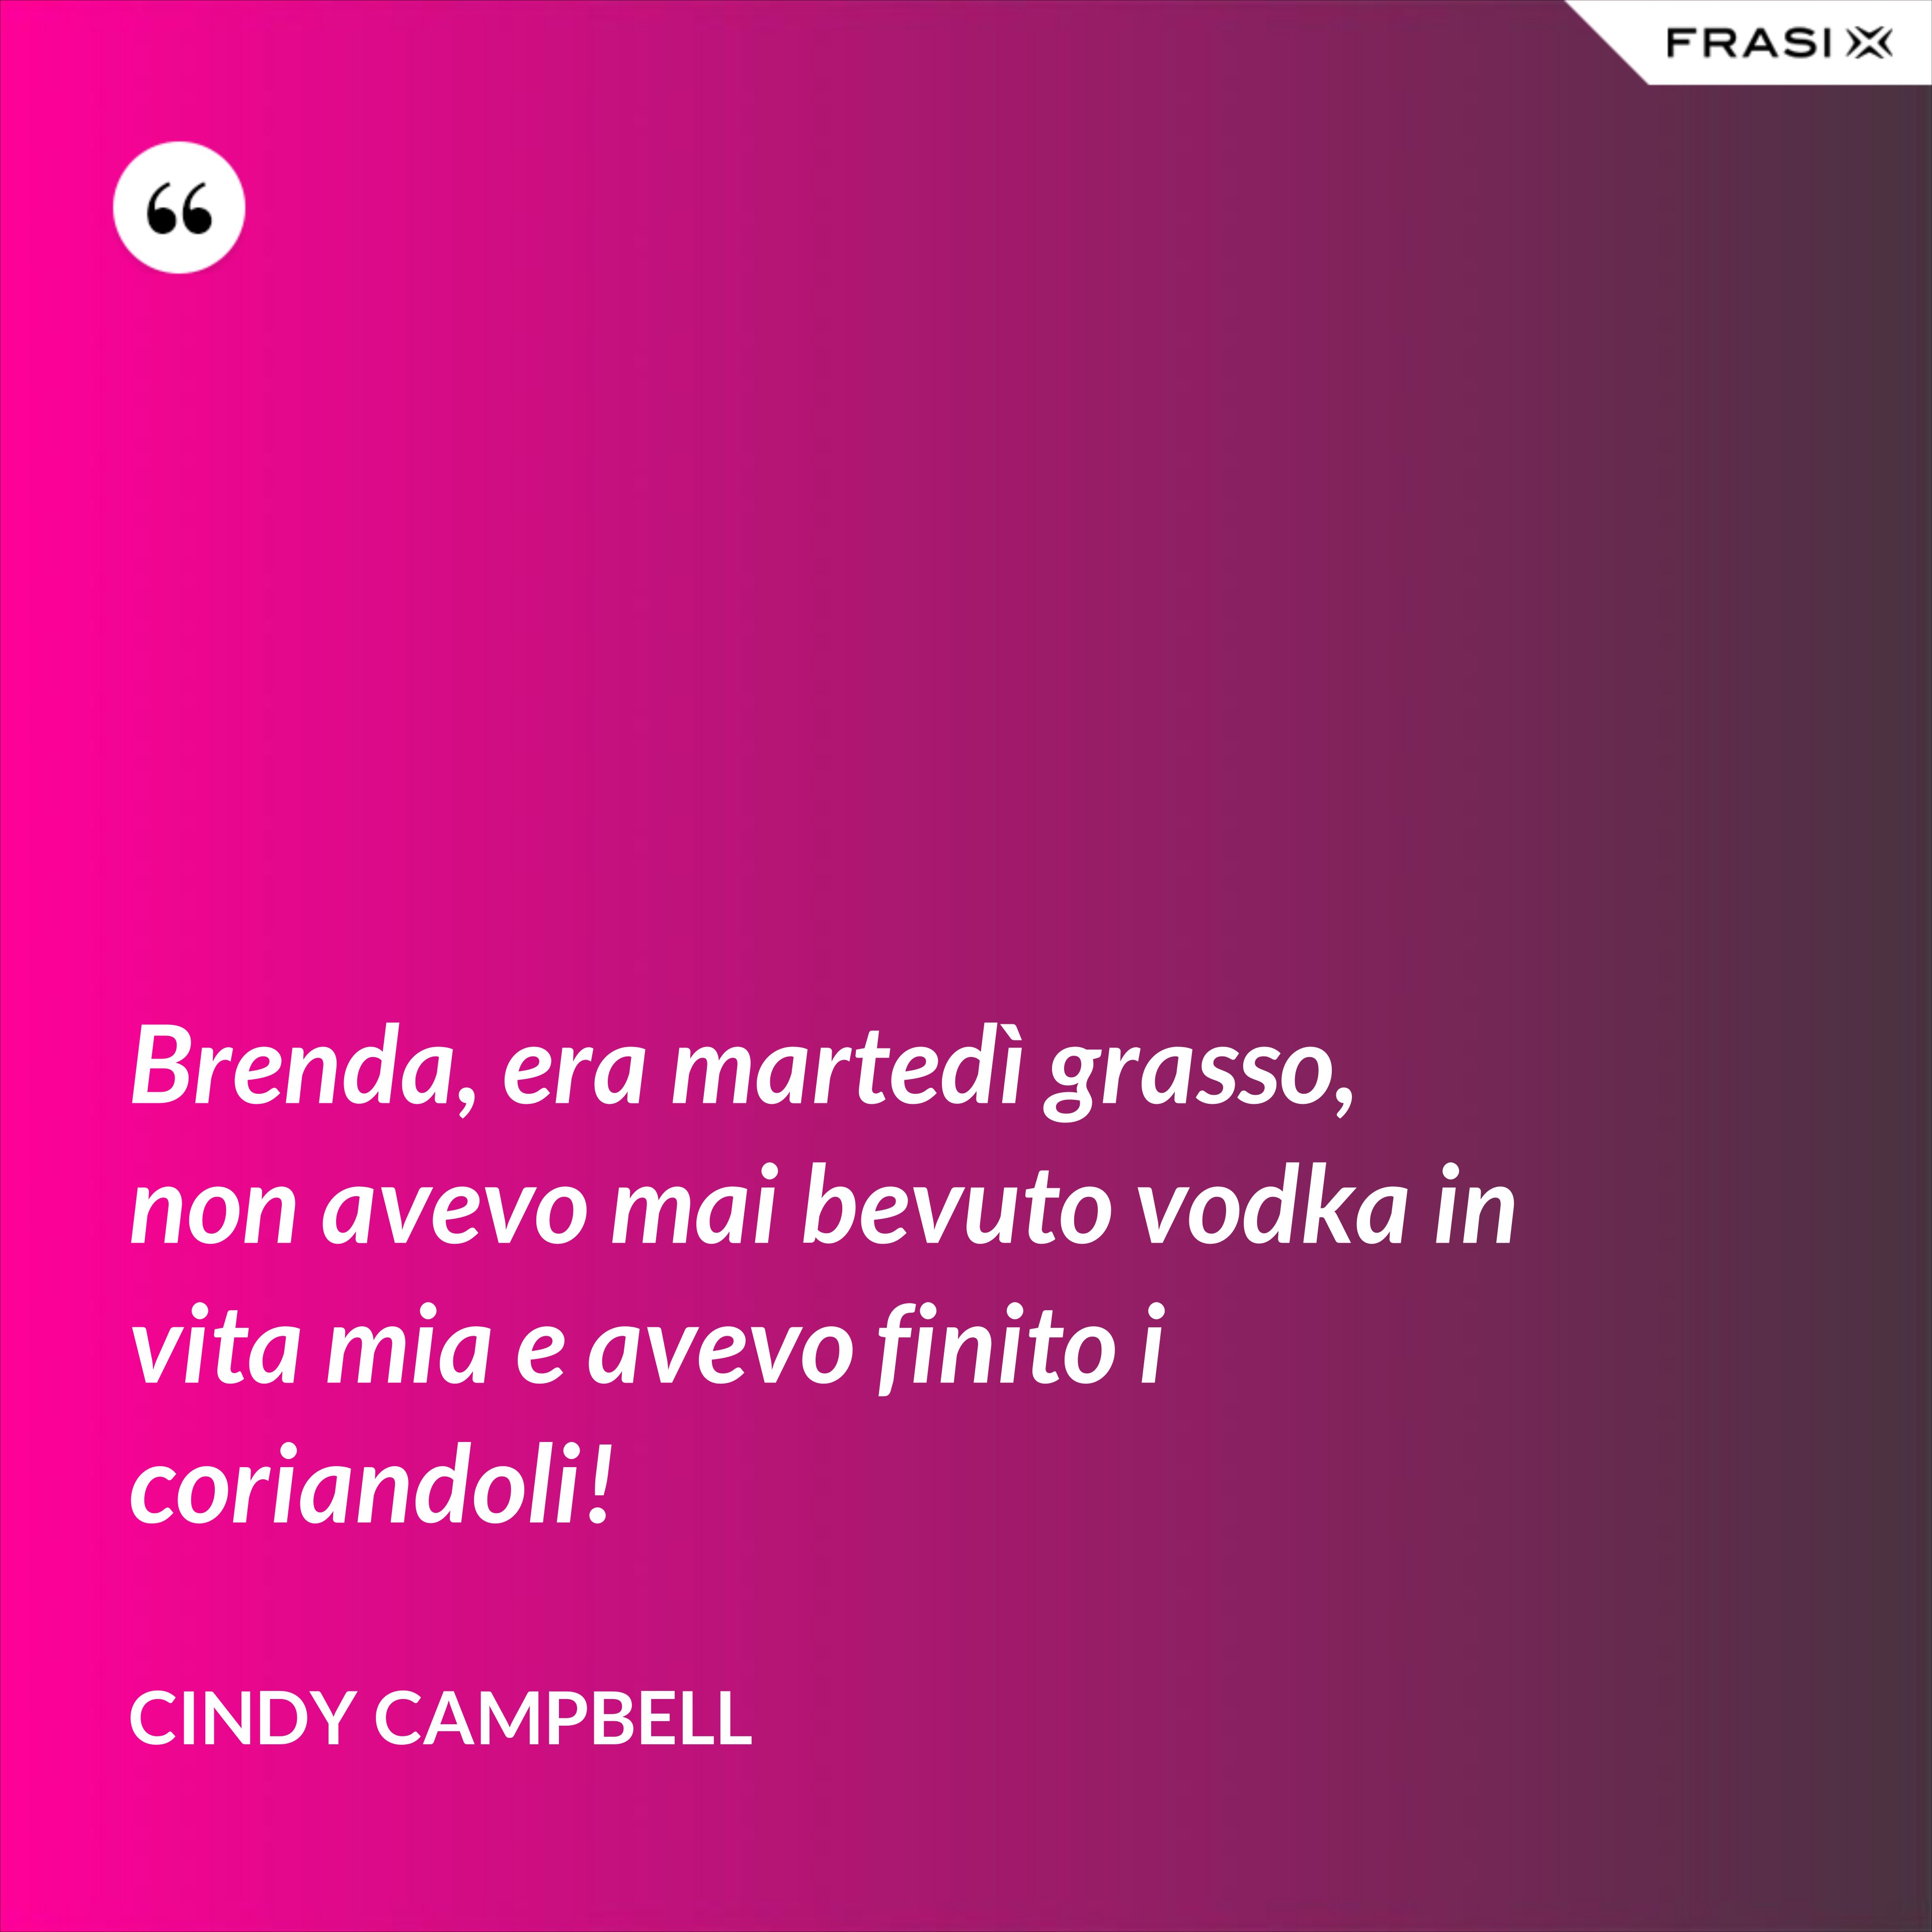 Brenda, era martedì grasso, non avevo mai bevuto vodka in vita mia e avevo finito i coriandoli! - Cindy Campbell